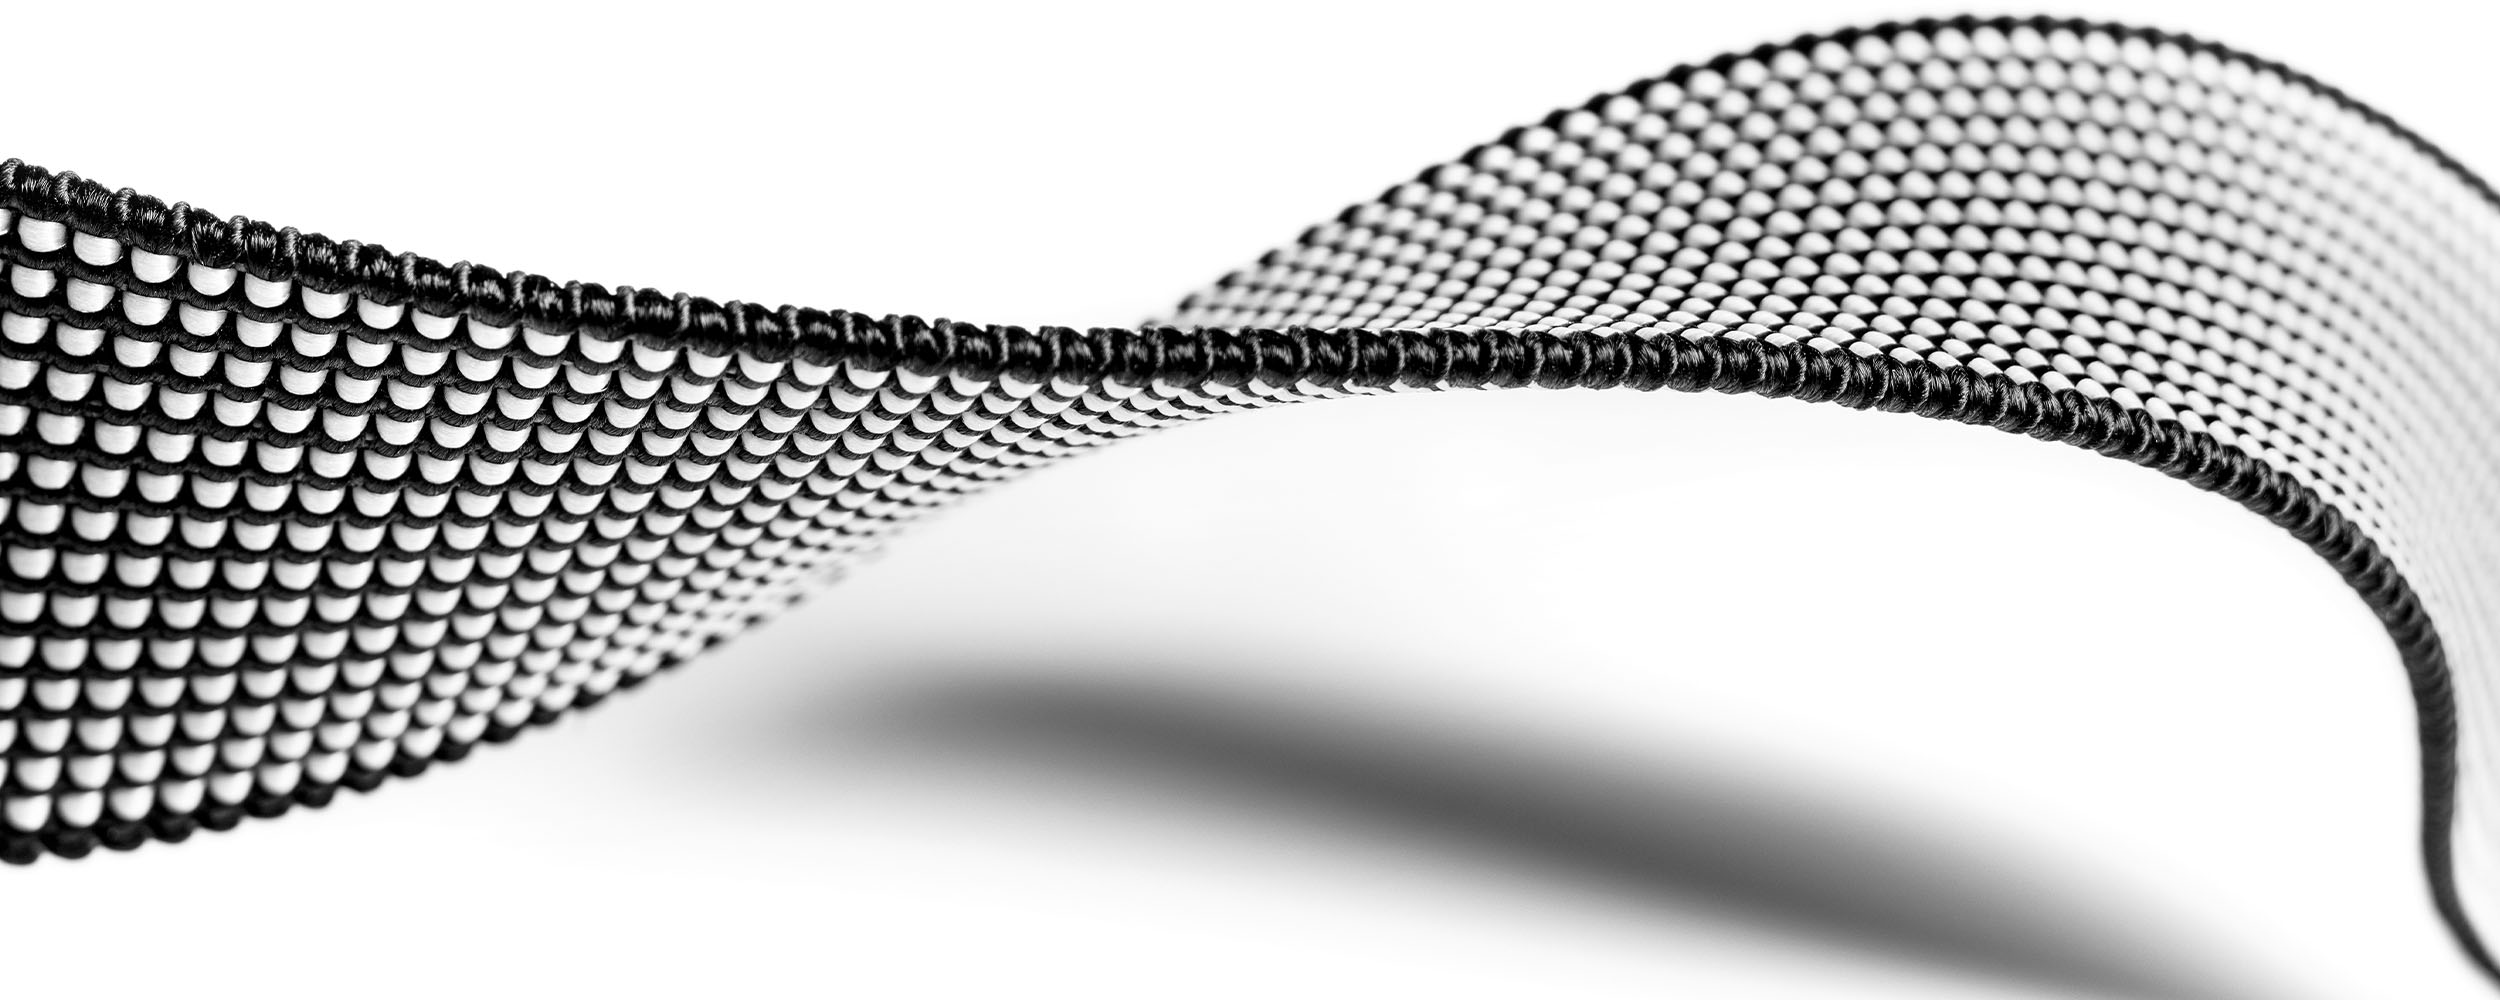 Produktfoto eines schwarz-weißen Gurtgummibands vor weißem Hintergrund